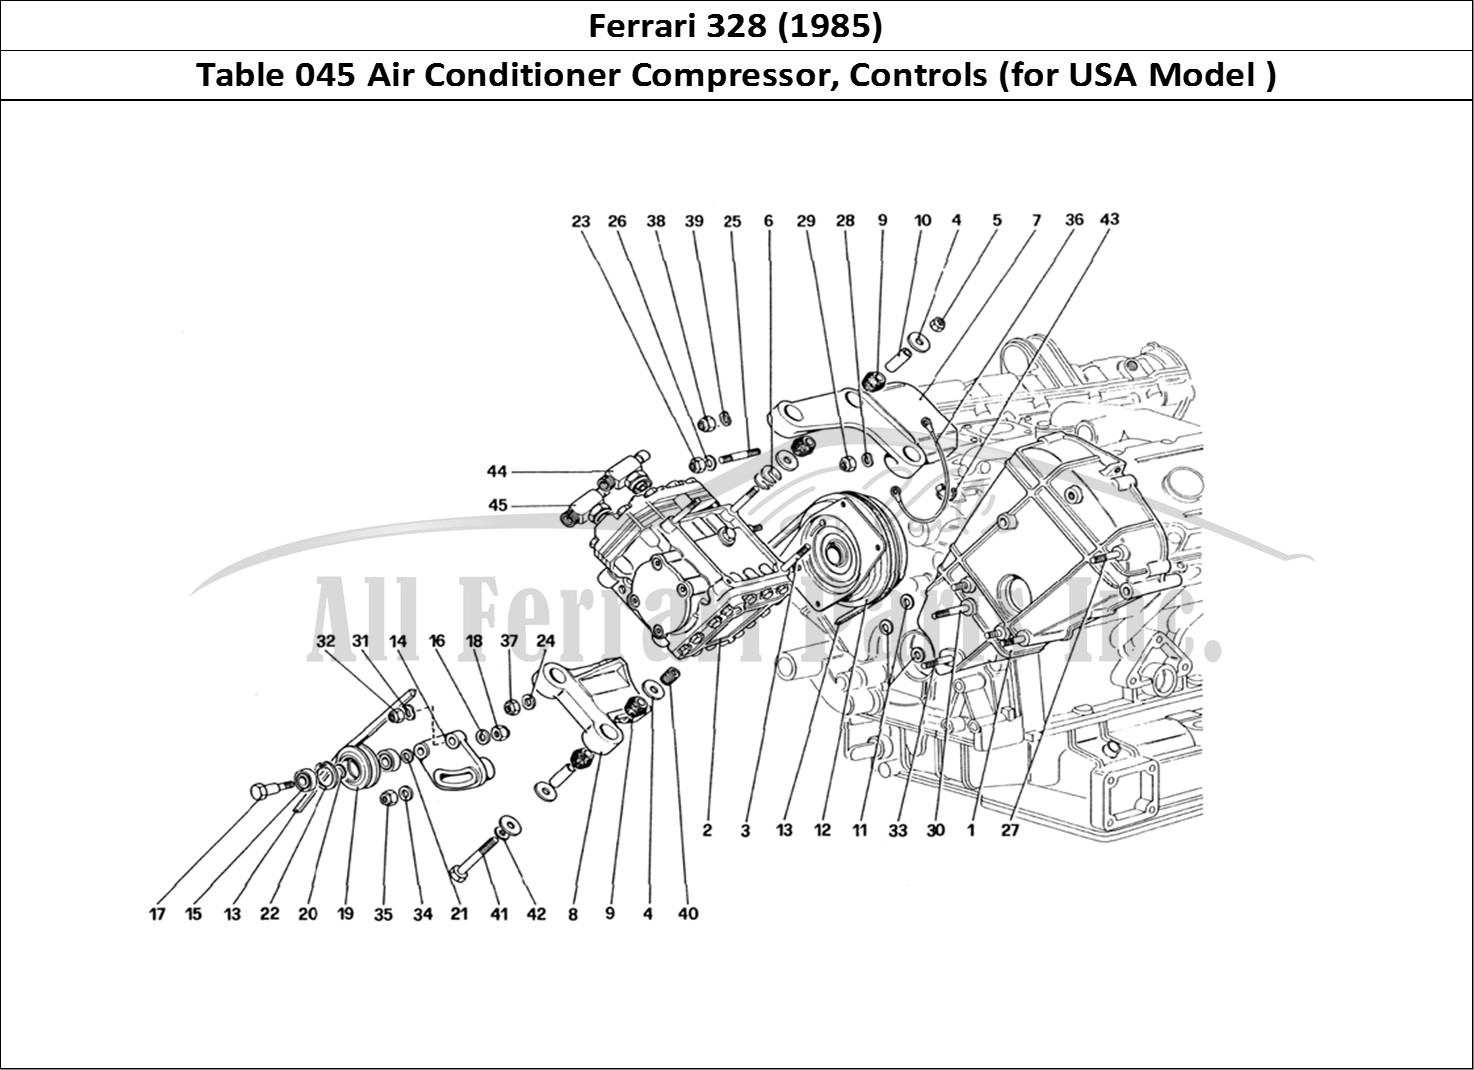 Ferrari Parts Ferrari 328 (1985) Page 045 Air Conditioning Compress